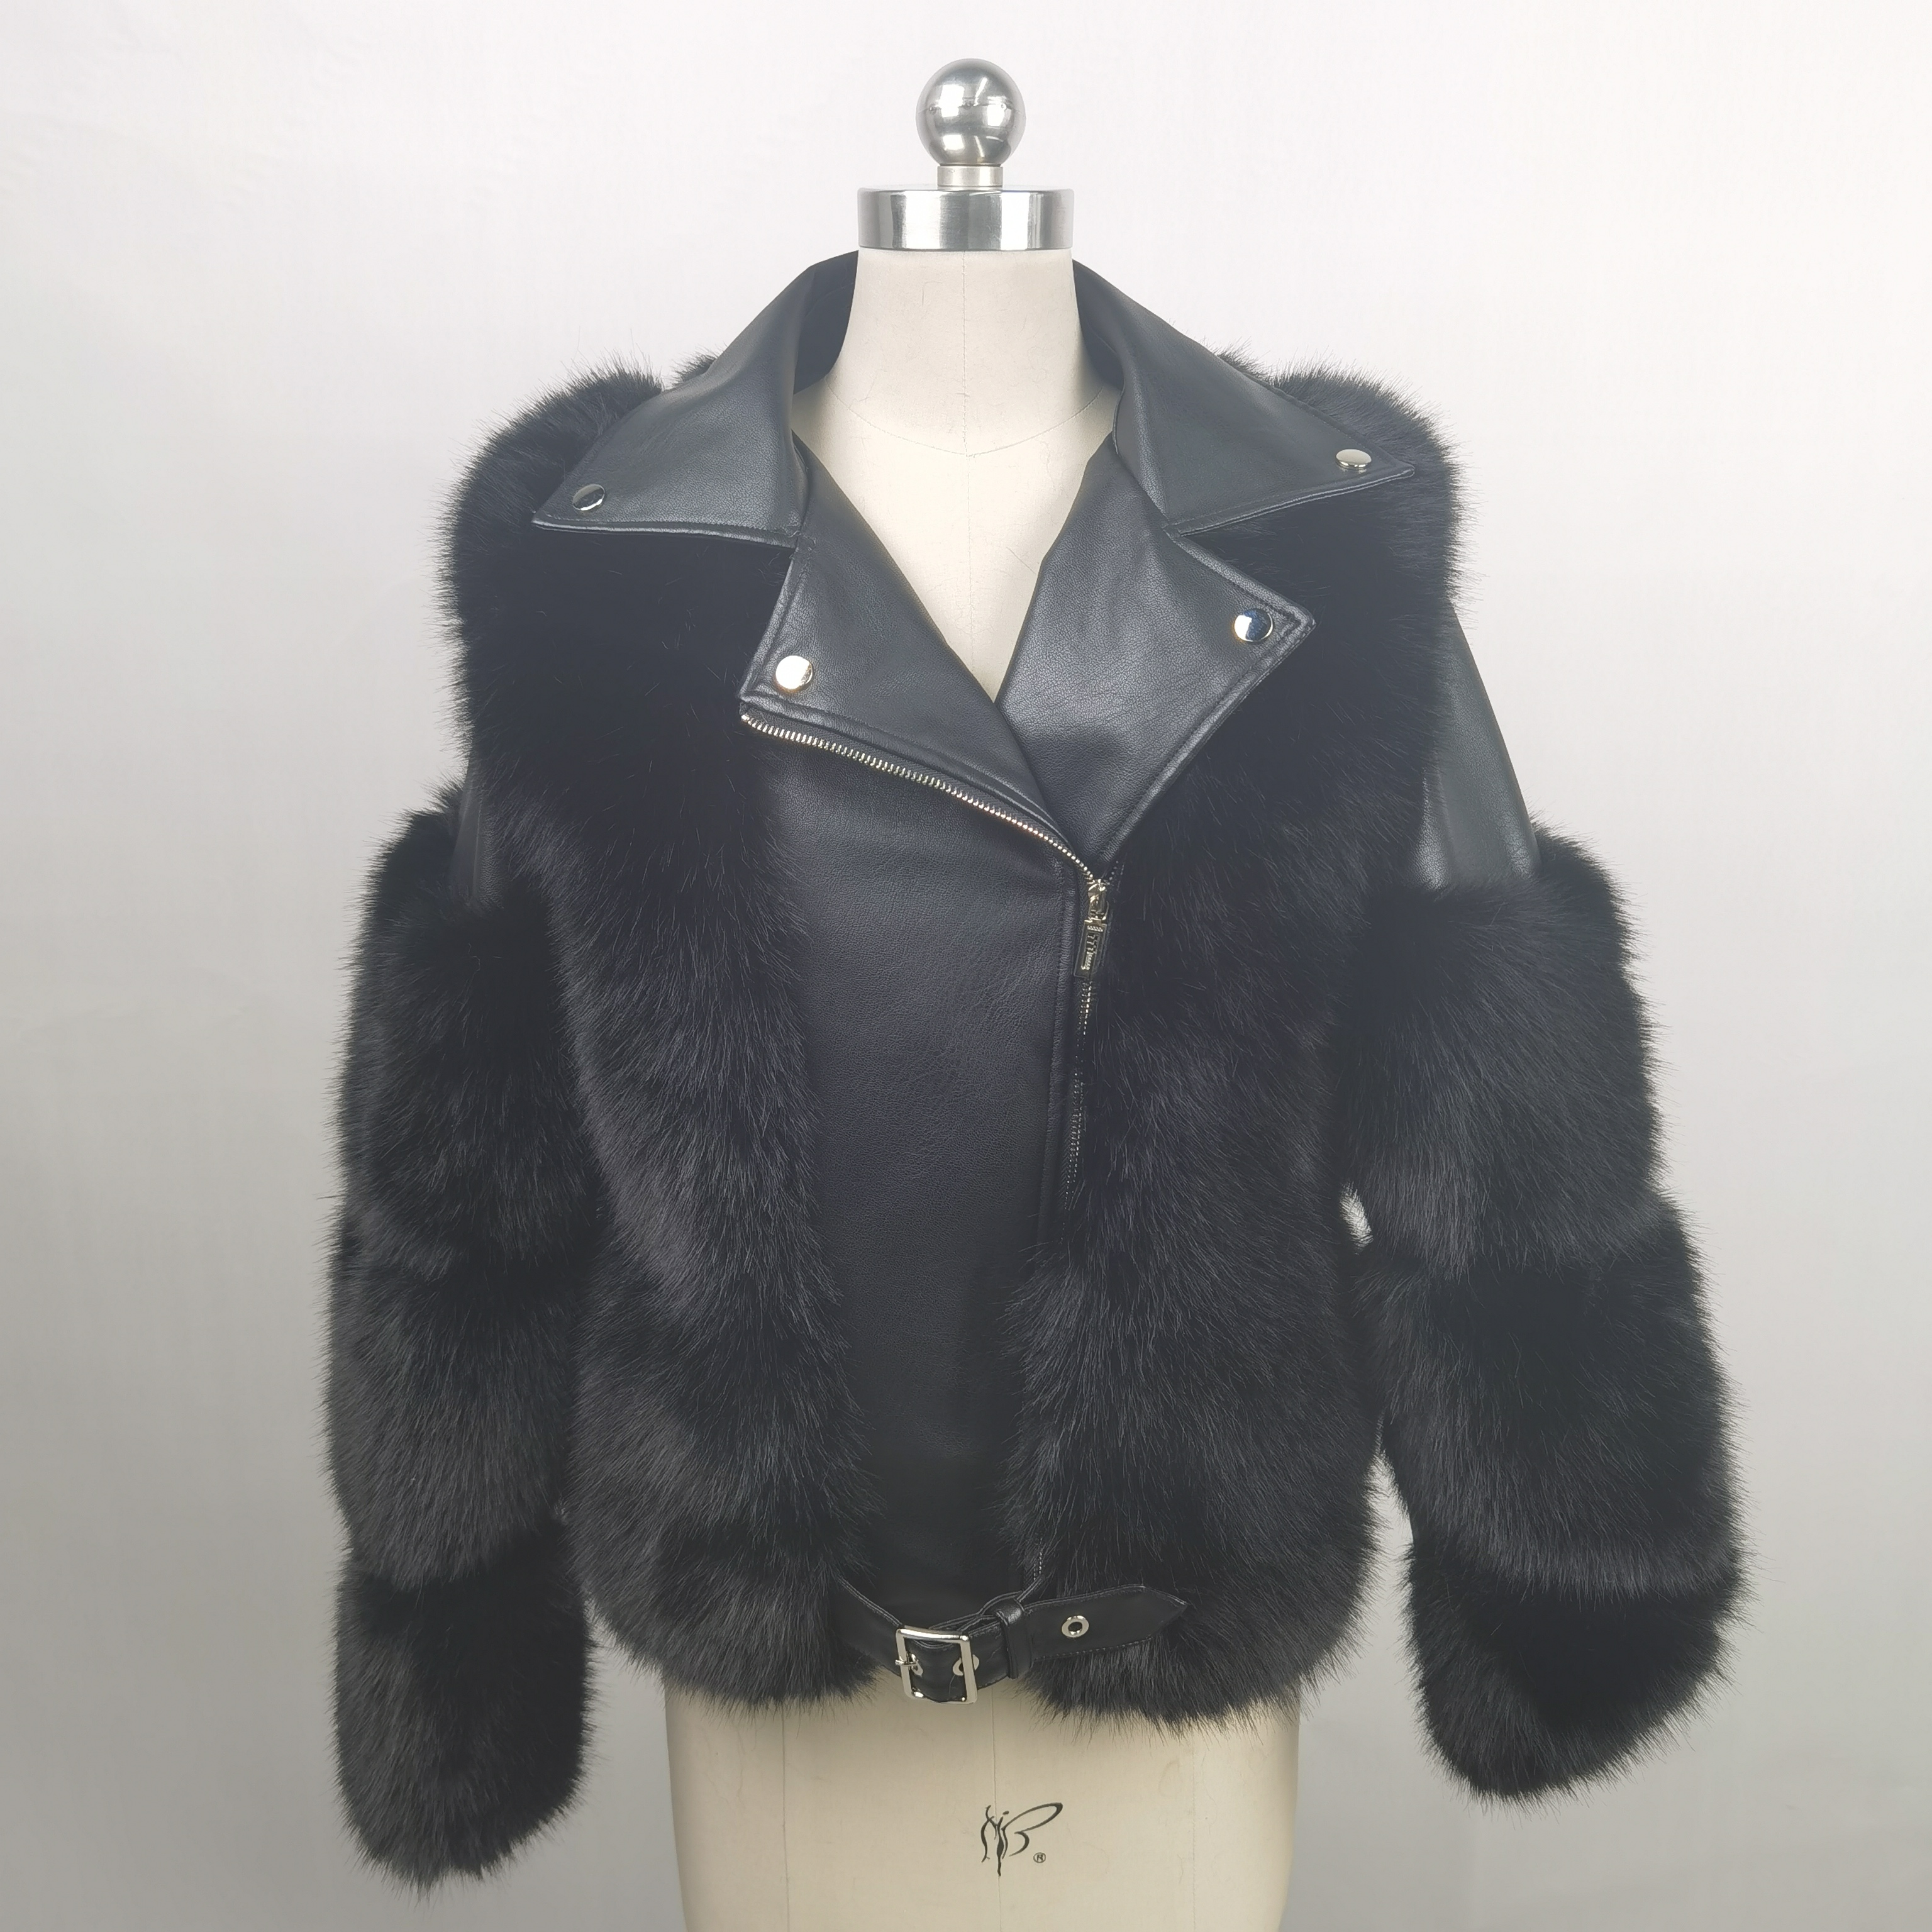 haine și îmbrăcăminte exterioară pentru femei personalizate pentru femei, jachetă de piele pentru motocicliști de iarnă, haină pufoasă de blană artificială femei